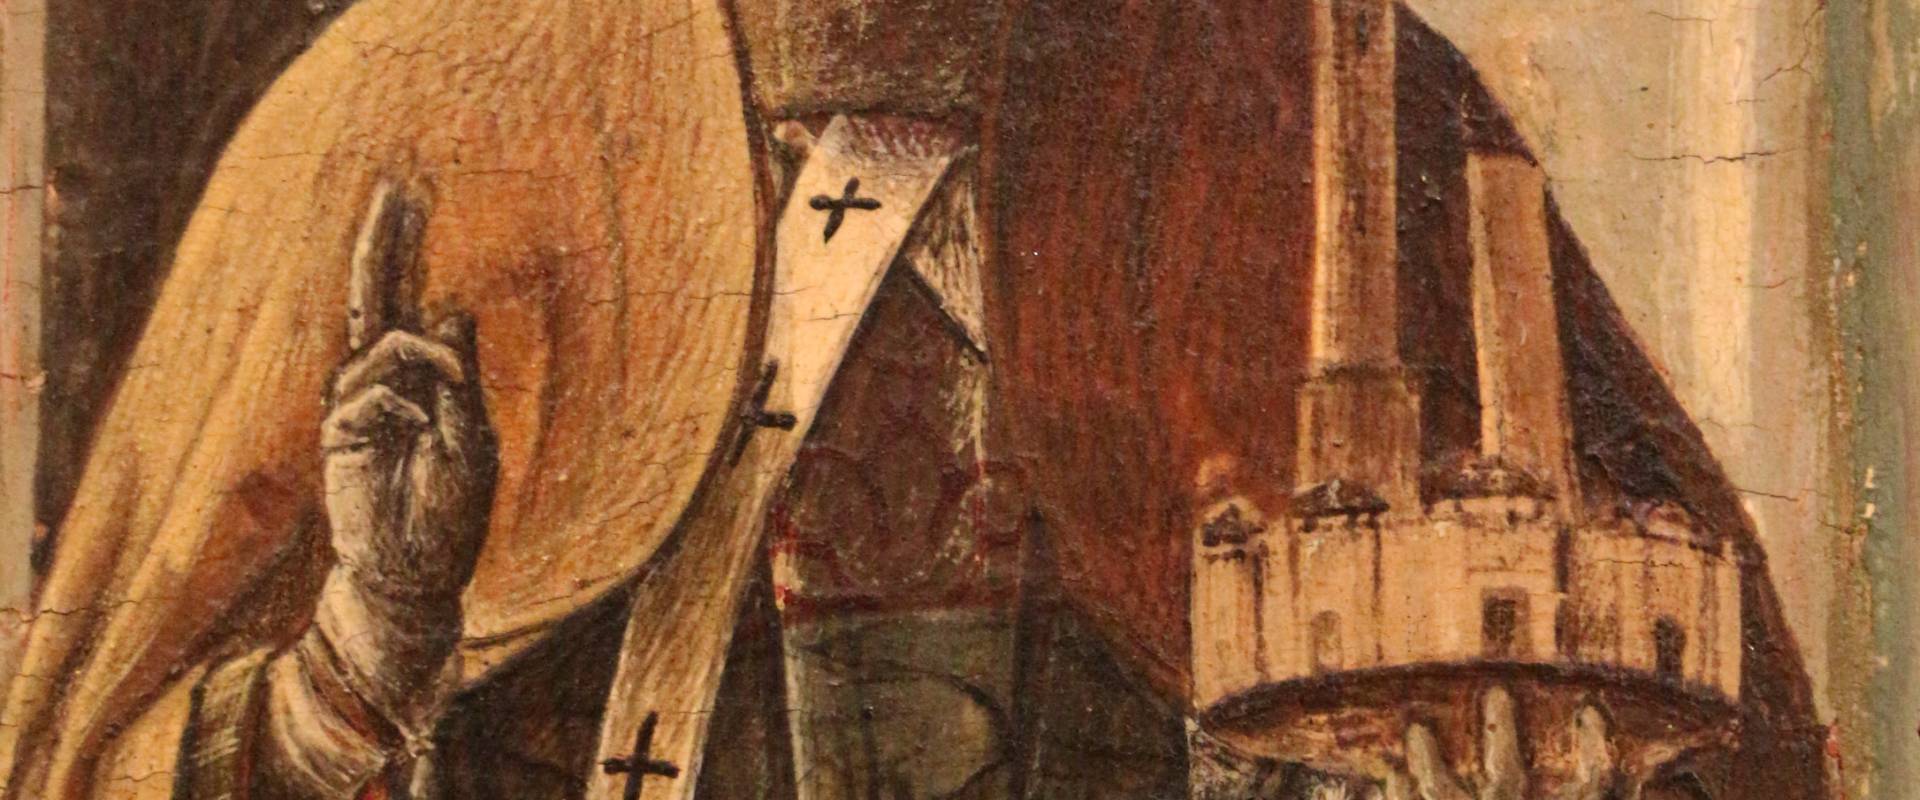 Ercole de' roberti, san petronio, dal polittico griffoni, 1472-1473 circa 03 foto di Sailko